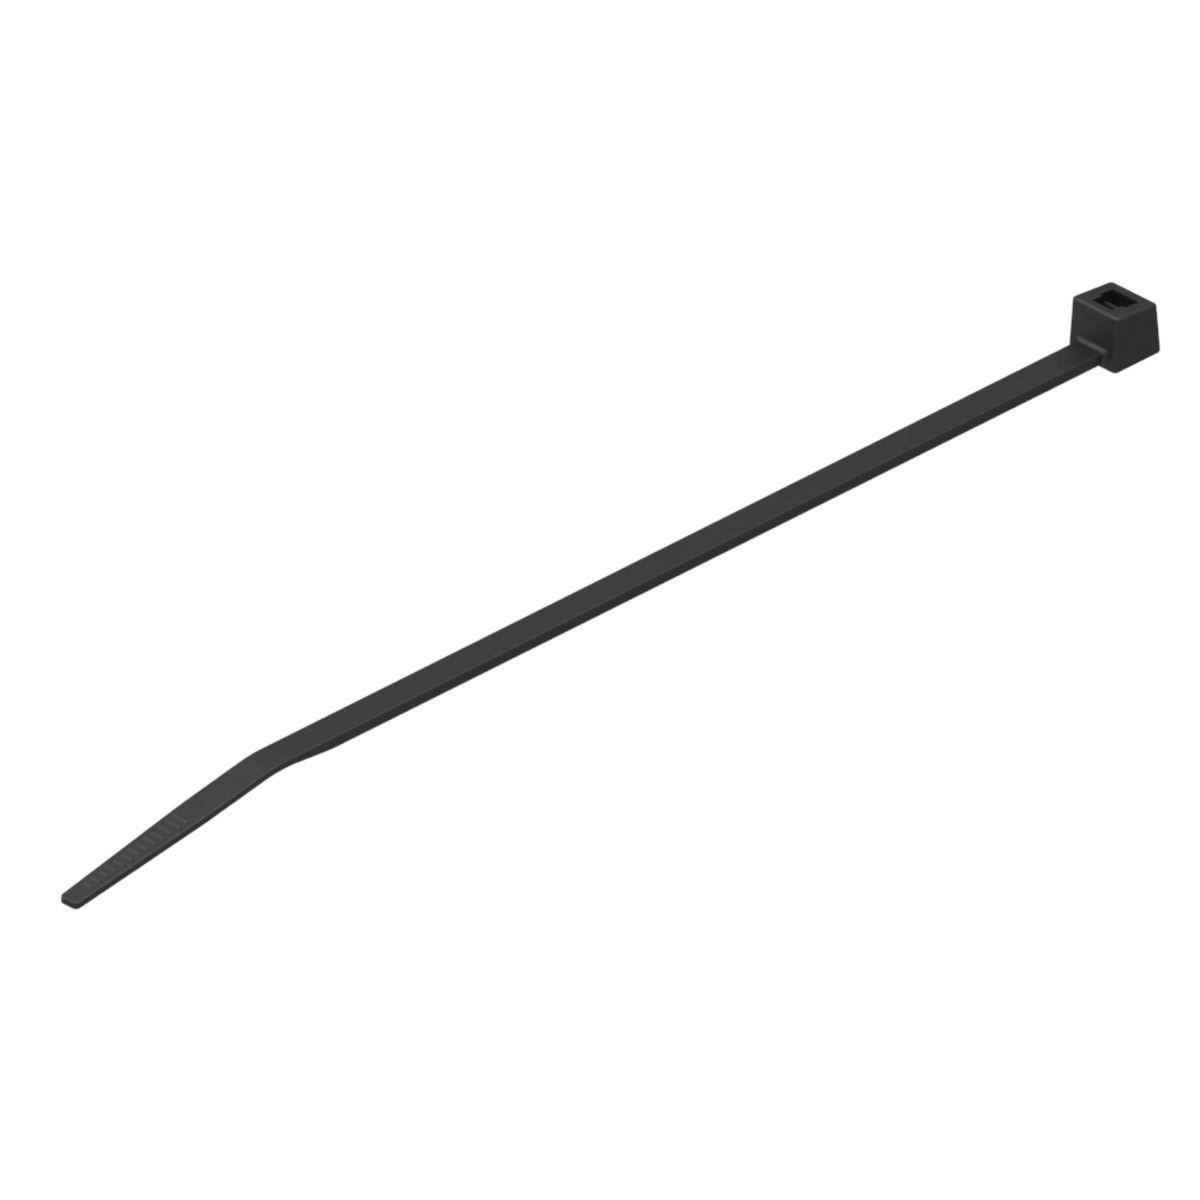 Hubbell CTNT50500D0 Nylon 12 Cable Tie, Tensile strength: 50 Lbs, Color: Black, 18.10"L, 0.19"W, 5.12" Bundle Dia. 